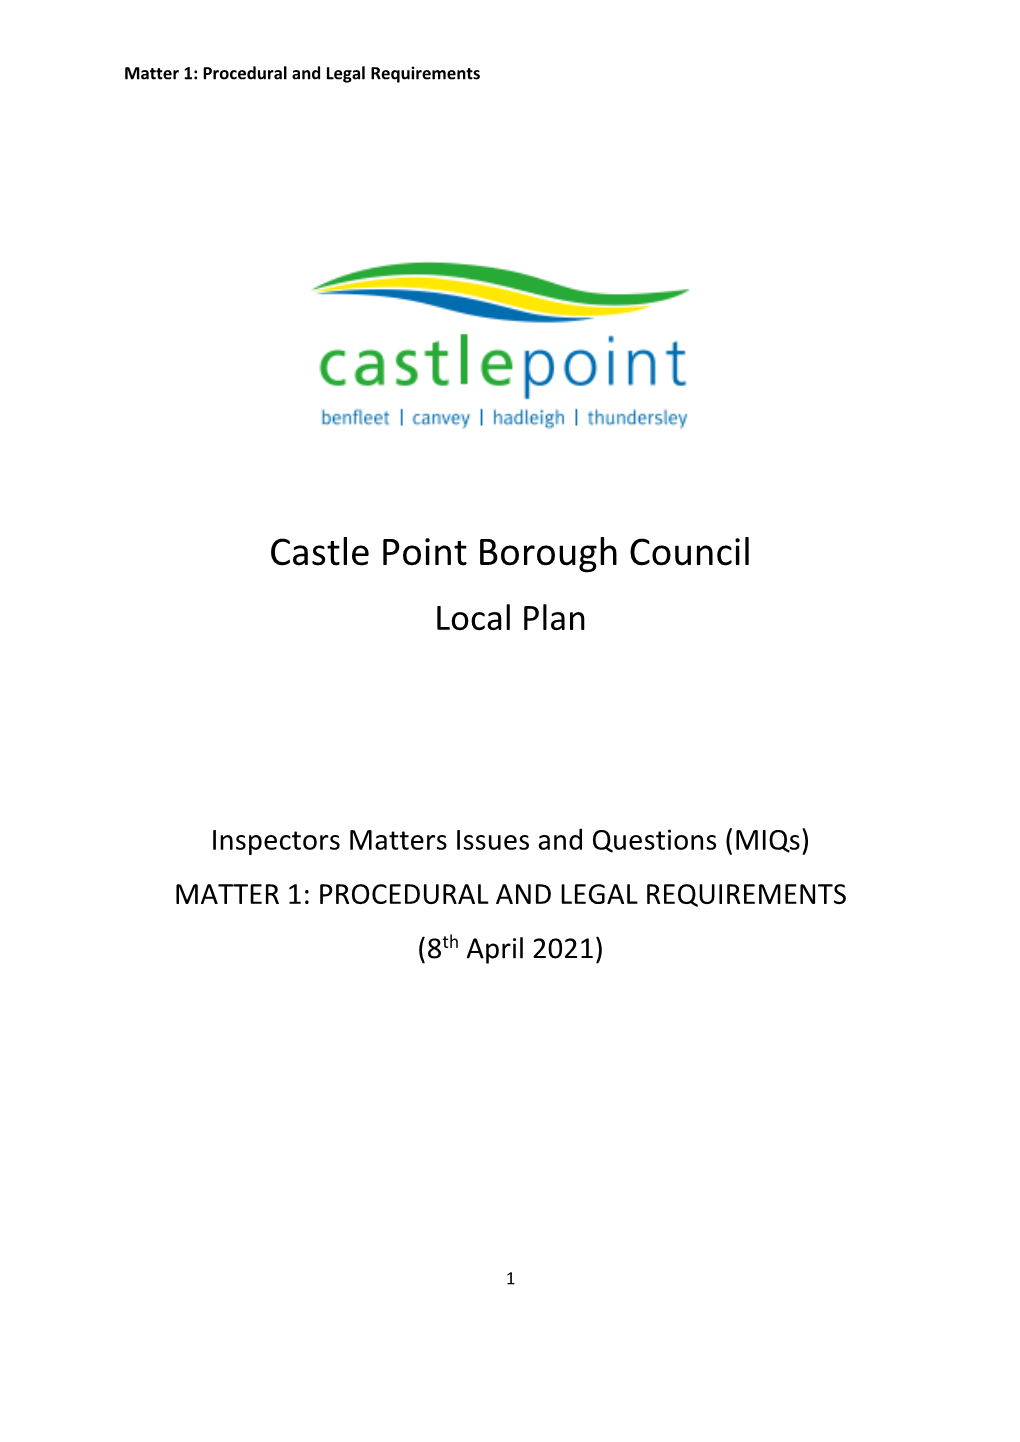 Castle Point Borough Council Local Plan